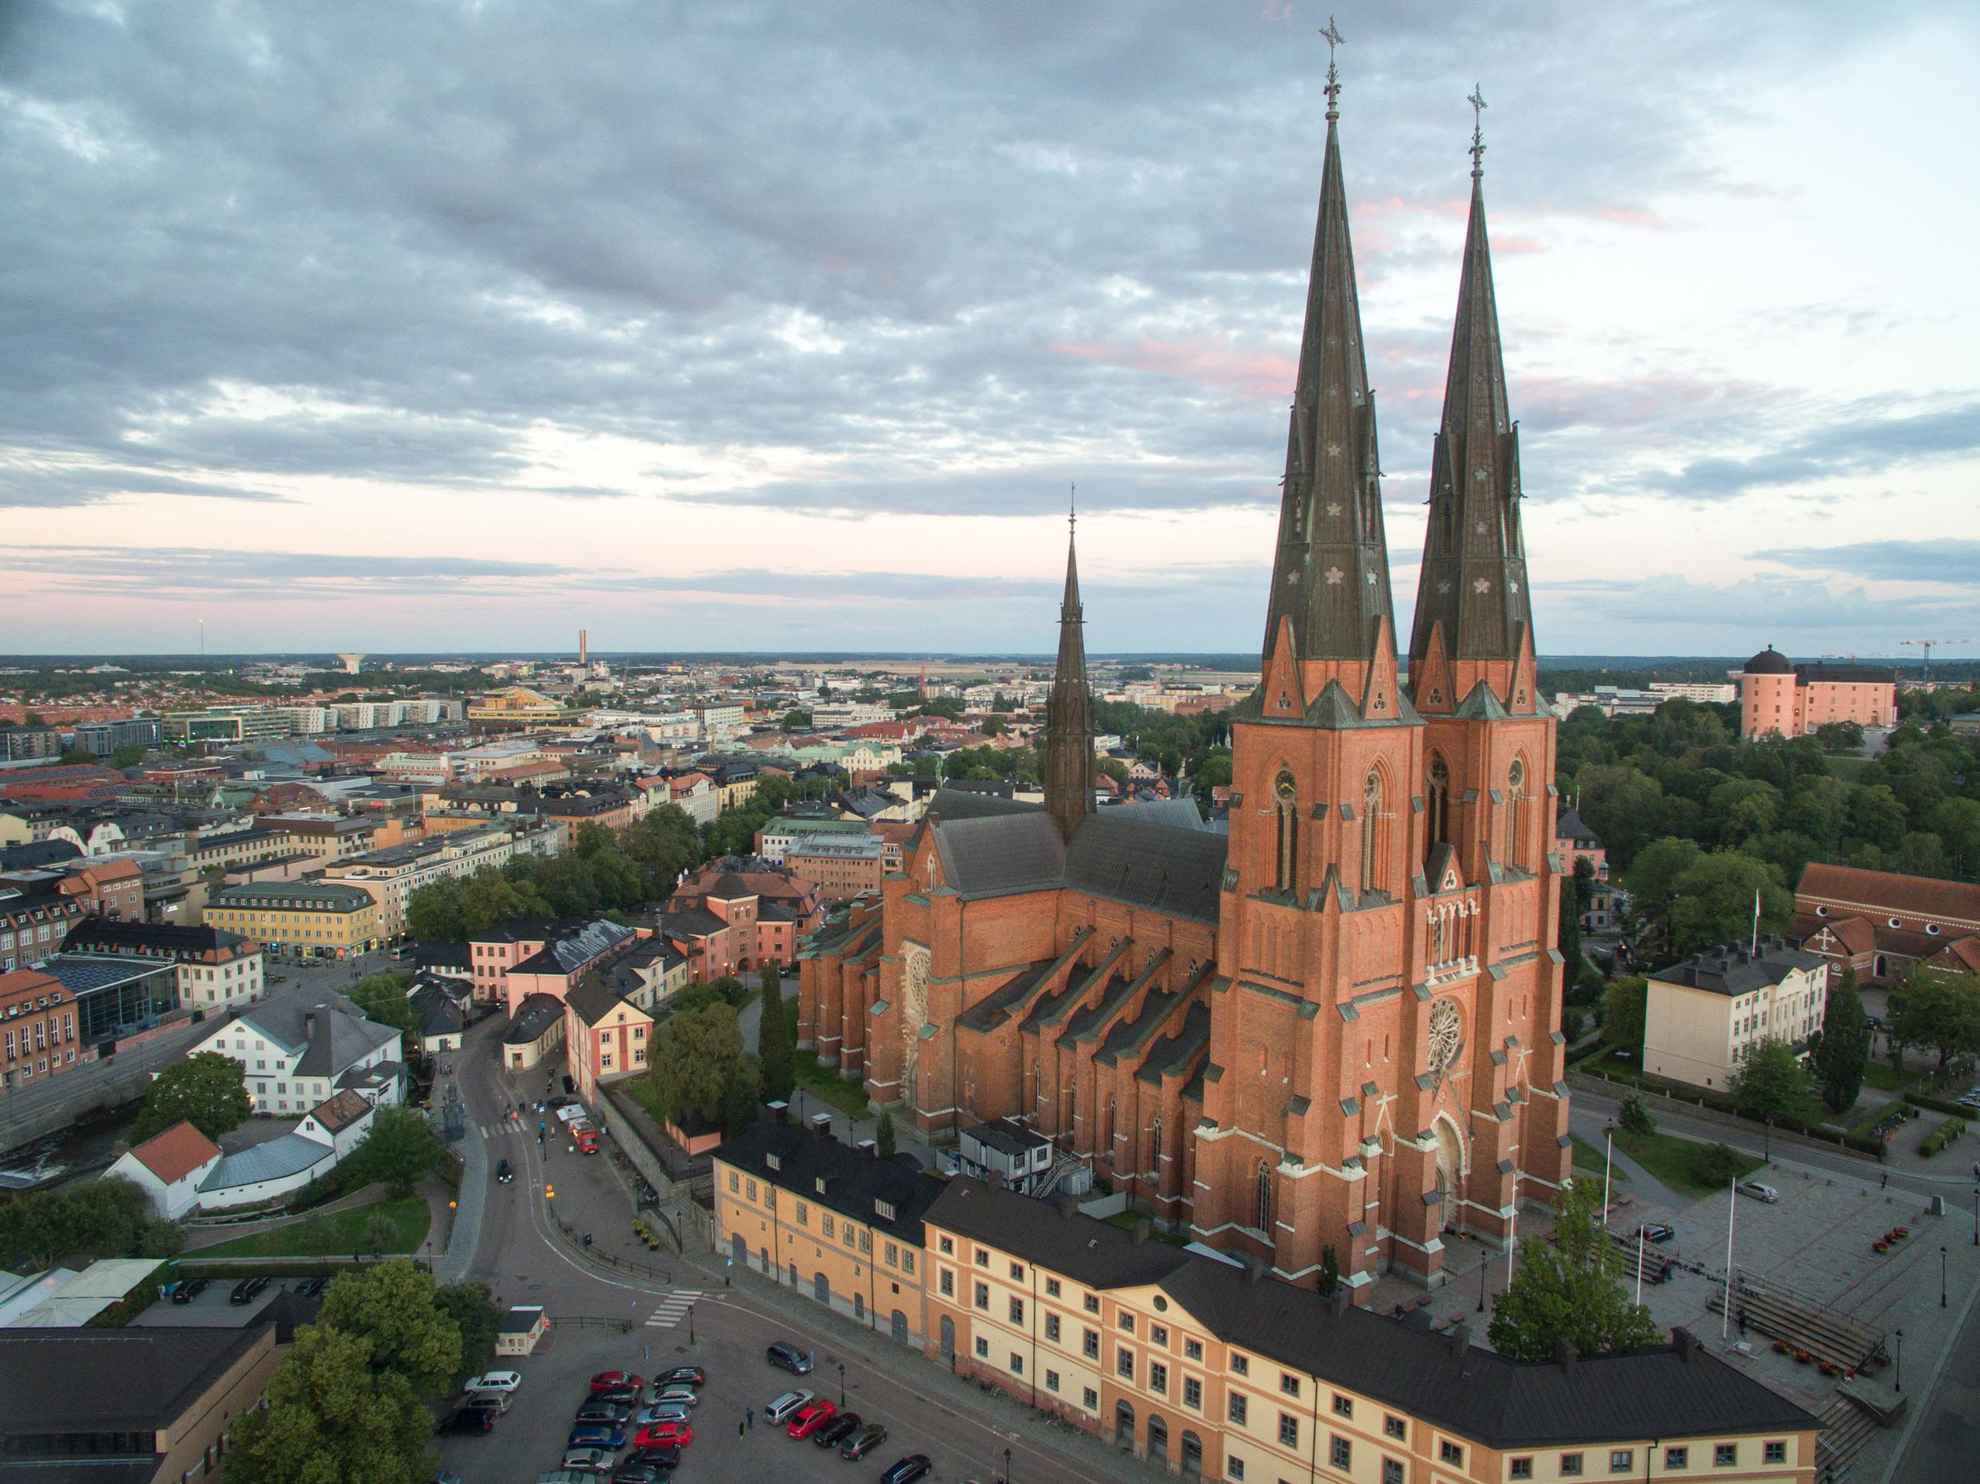 Kathedraal van Uppsala en de stad van bovenaf gezien.